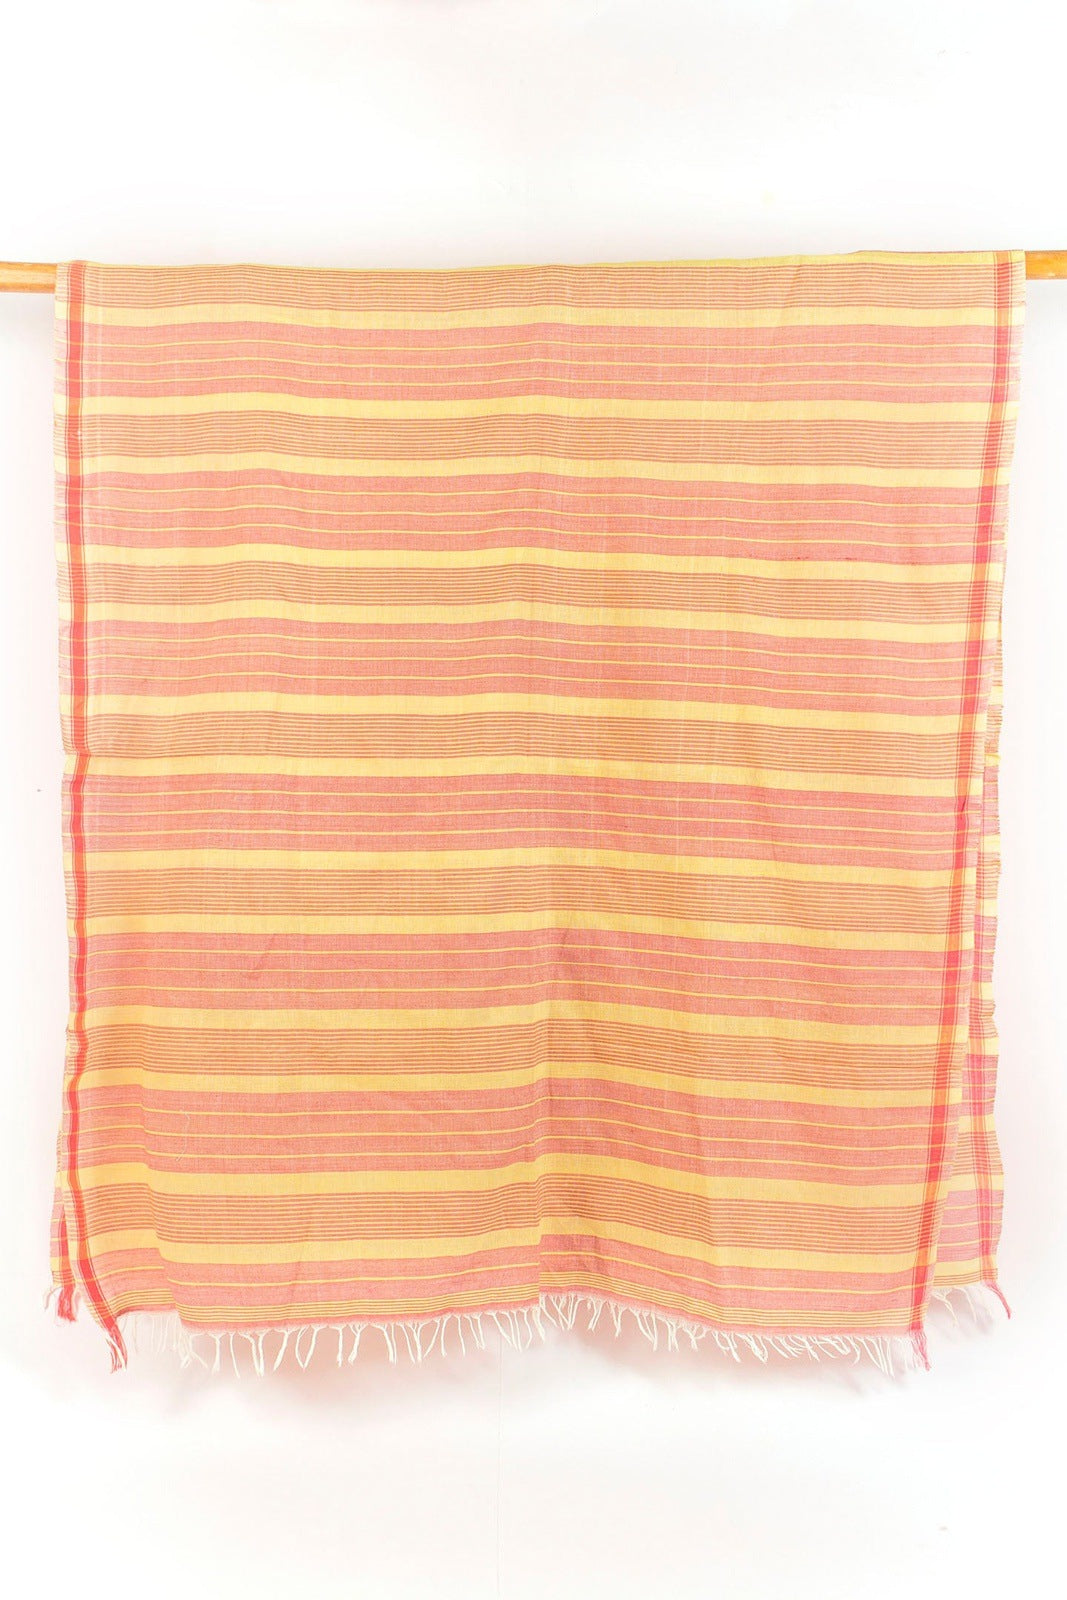 कॉटन गामुसा तौलिया लेमोनी मेलोनी (ऑर्डर करने के लिए बनाया गया)